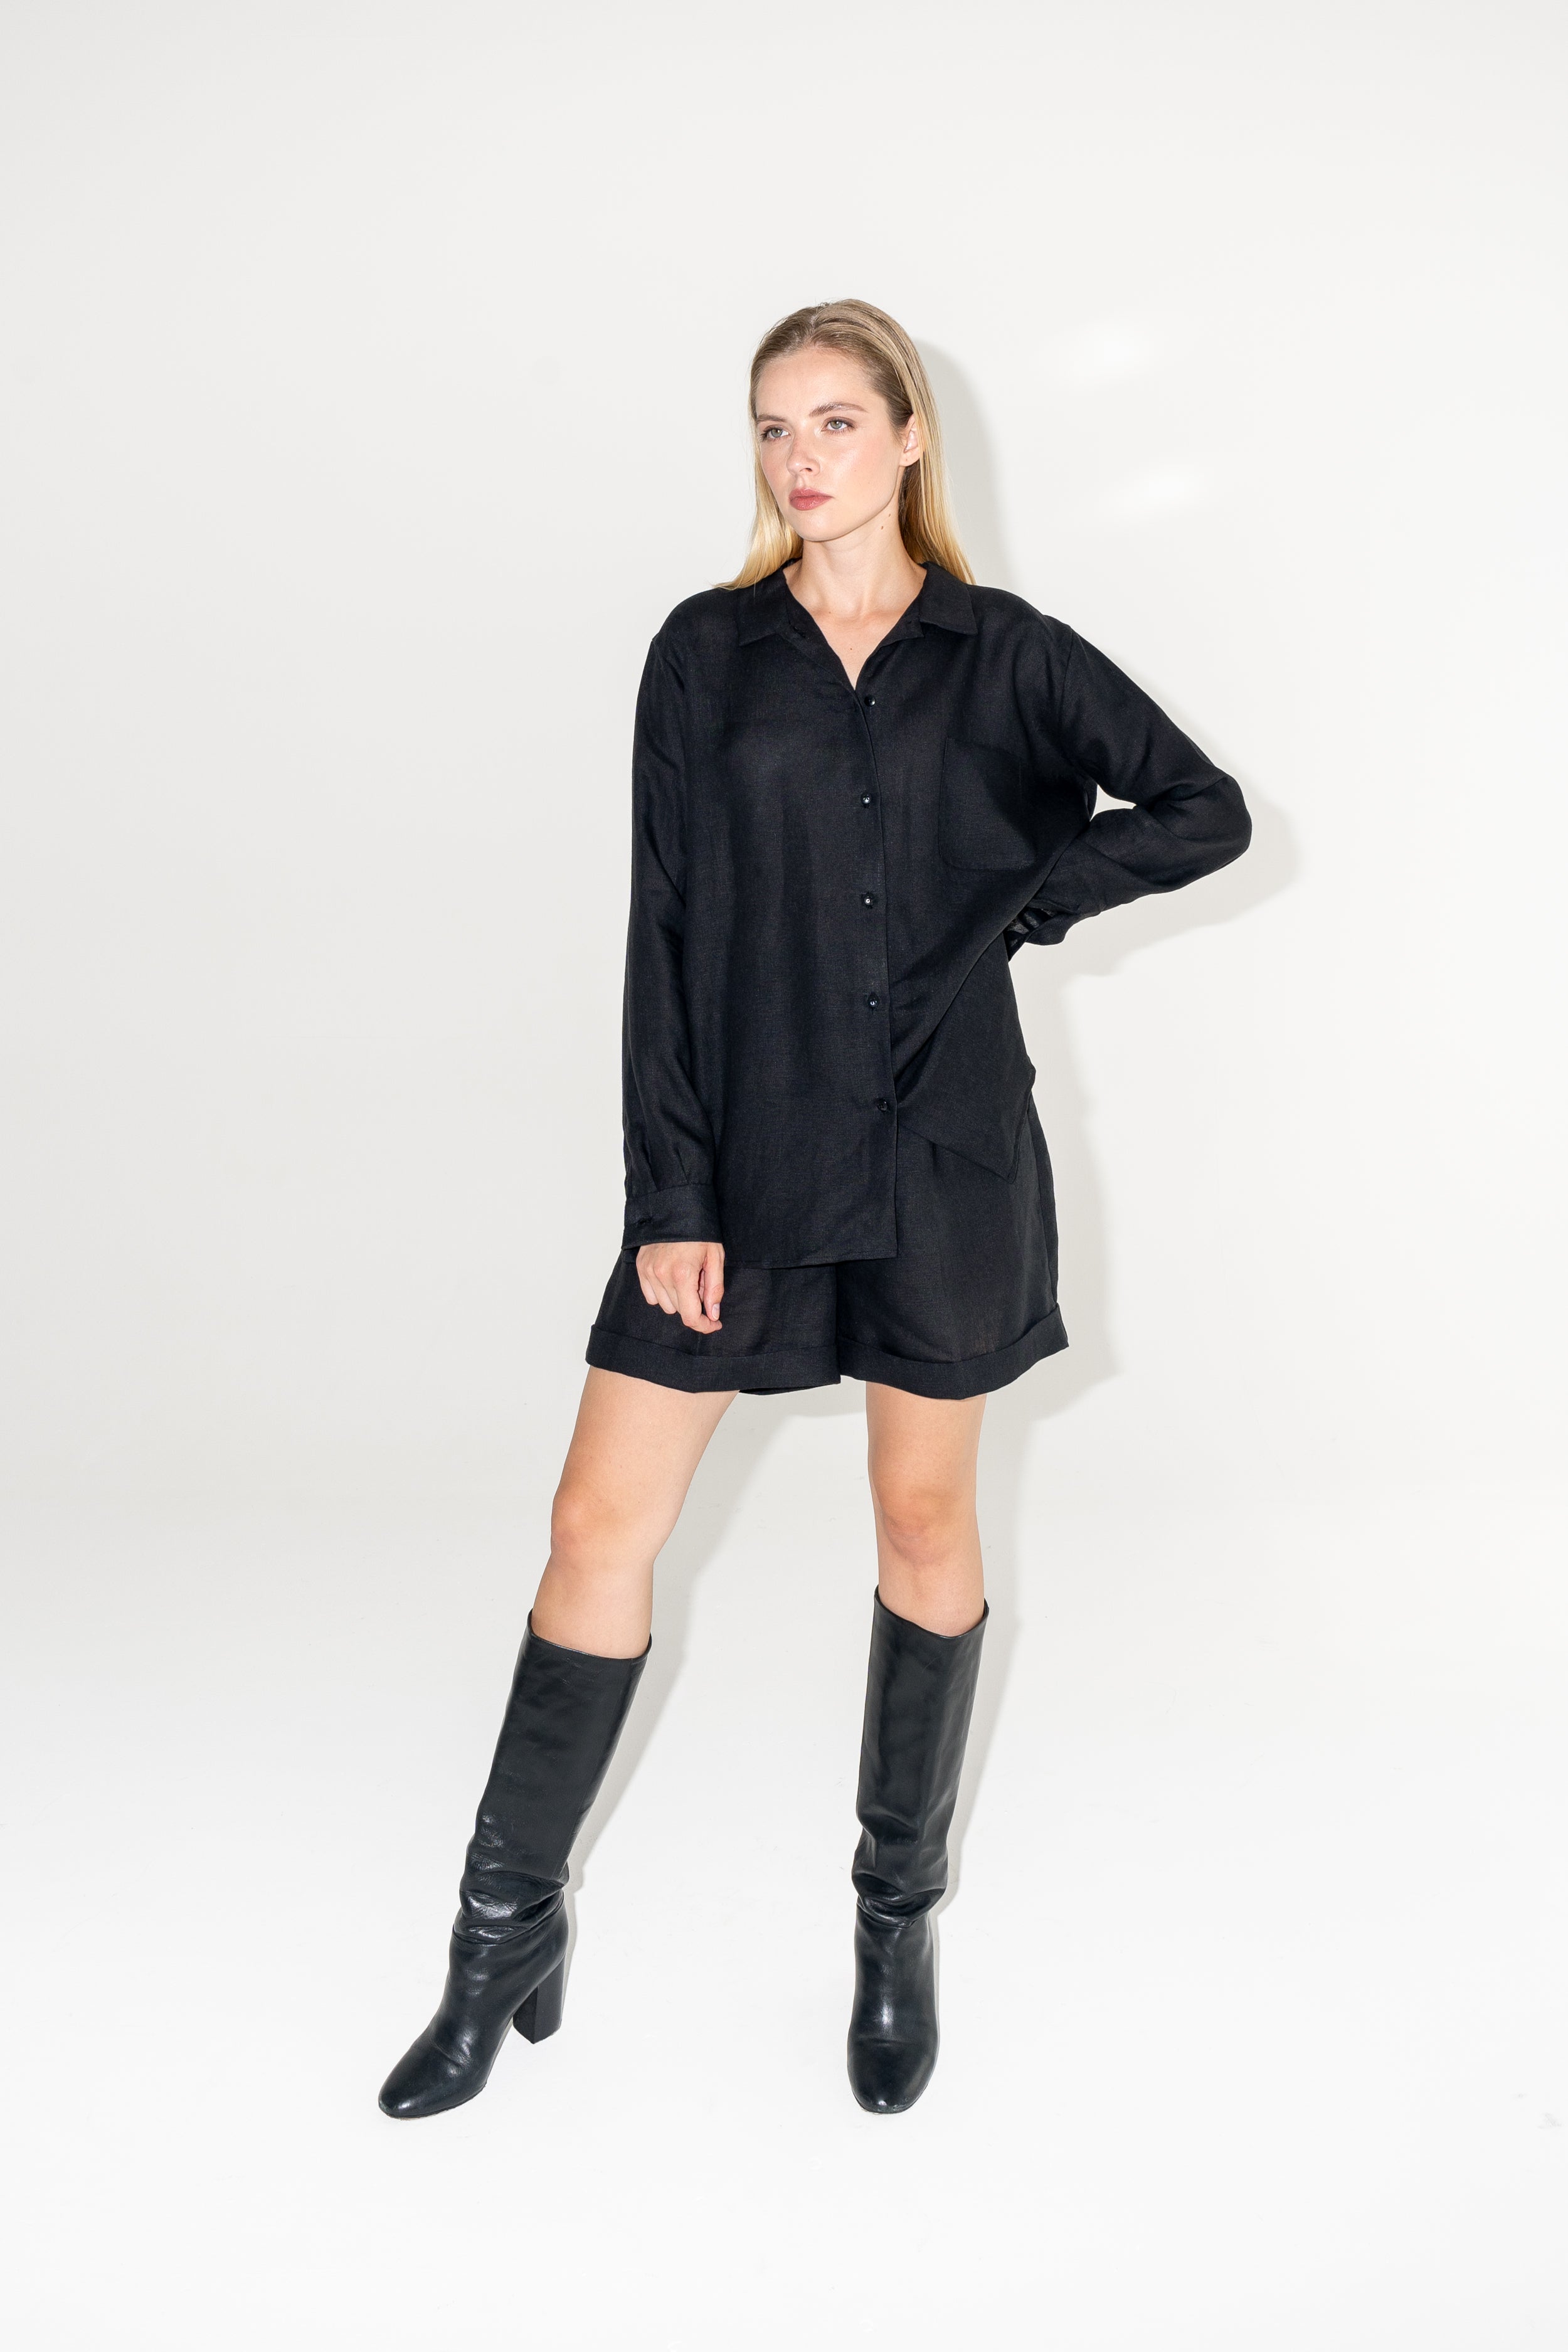 Outfit lněné černé košile a kraťas ADVA Studios s černými kozačkami na vysokém podpatku